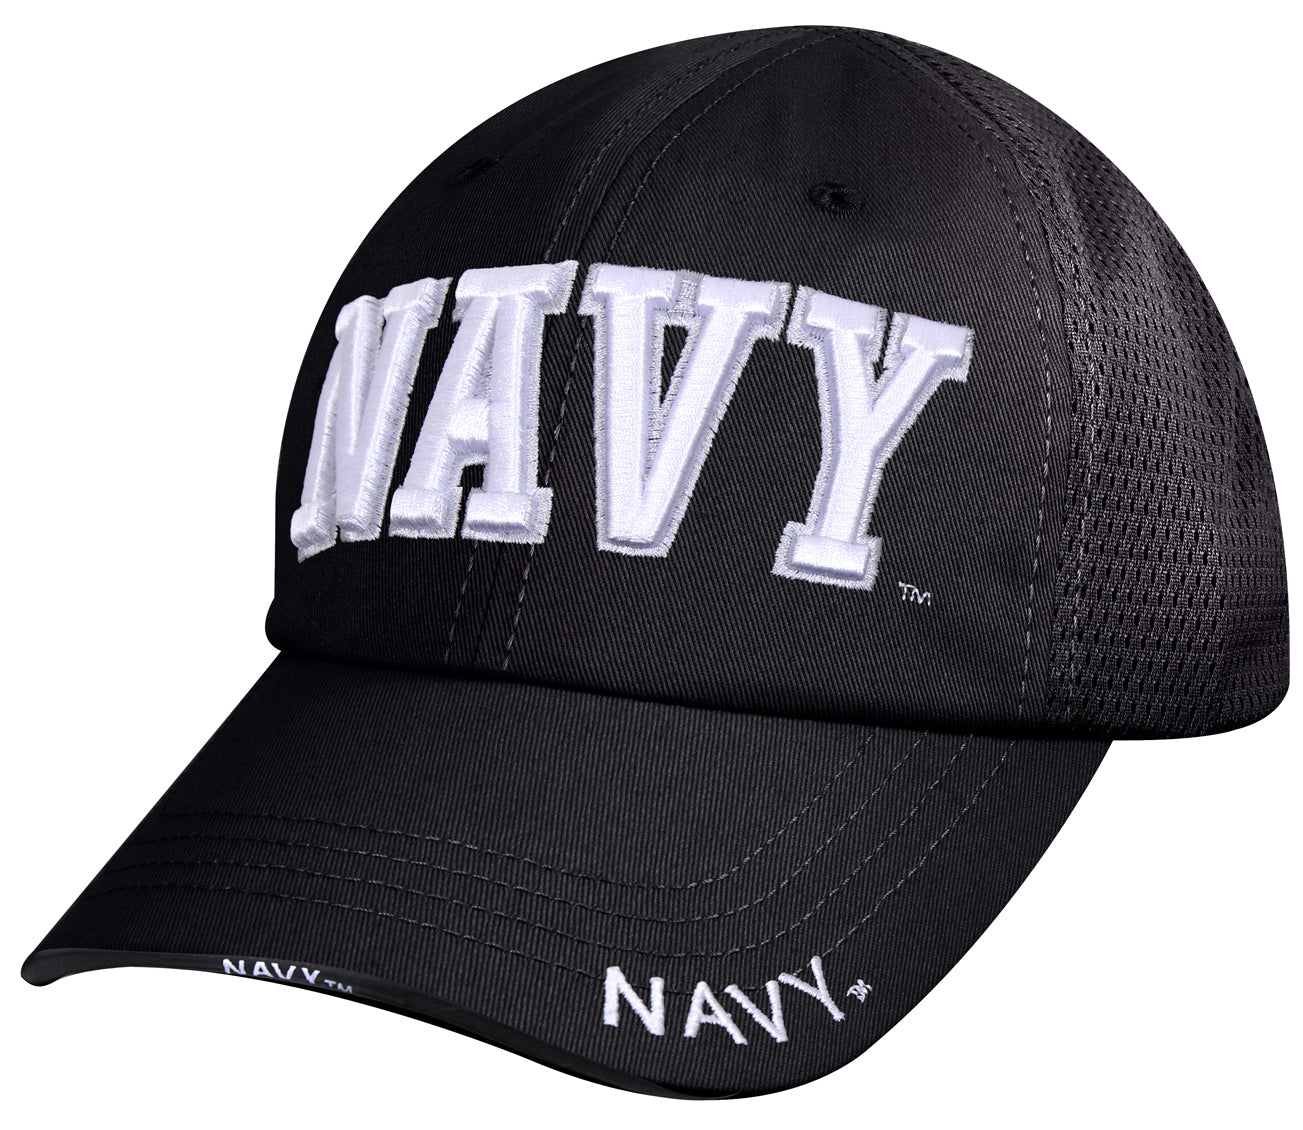 Rothco Navy Mesh Back Tactical Cap